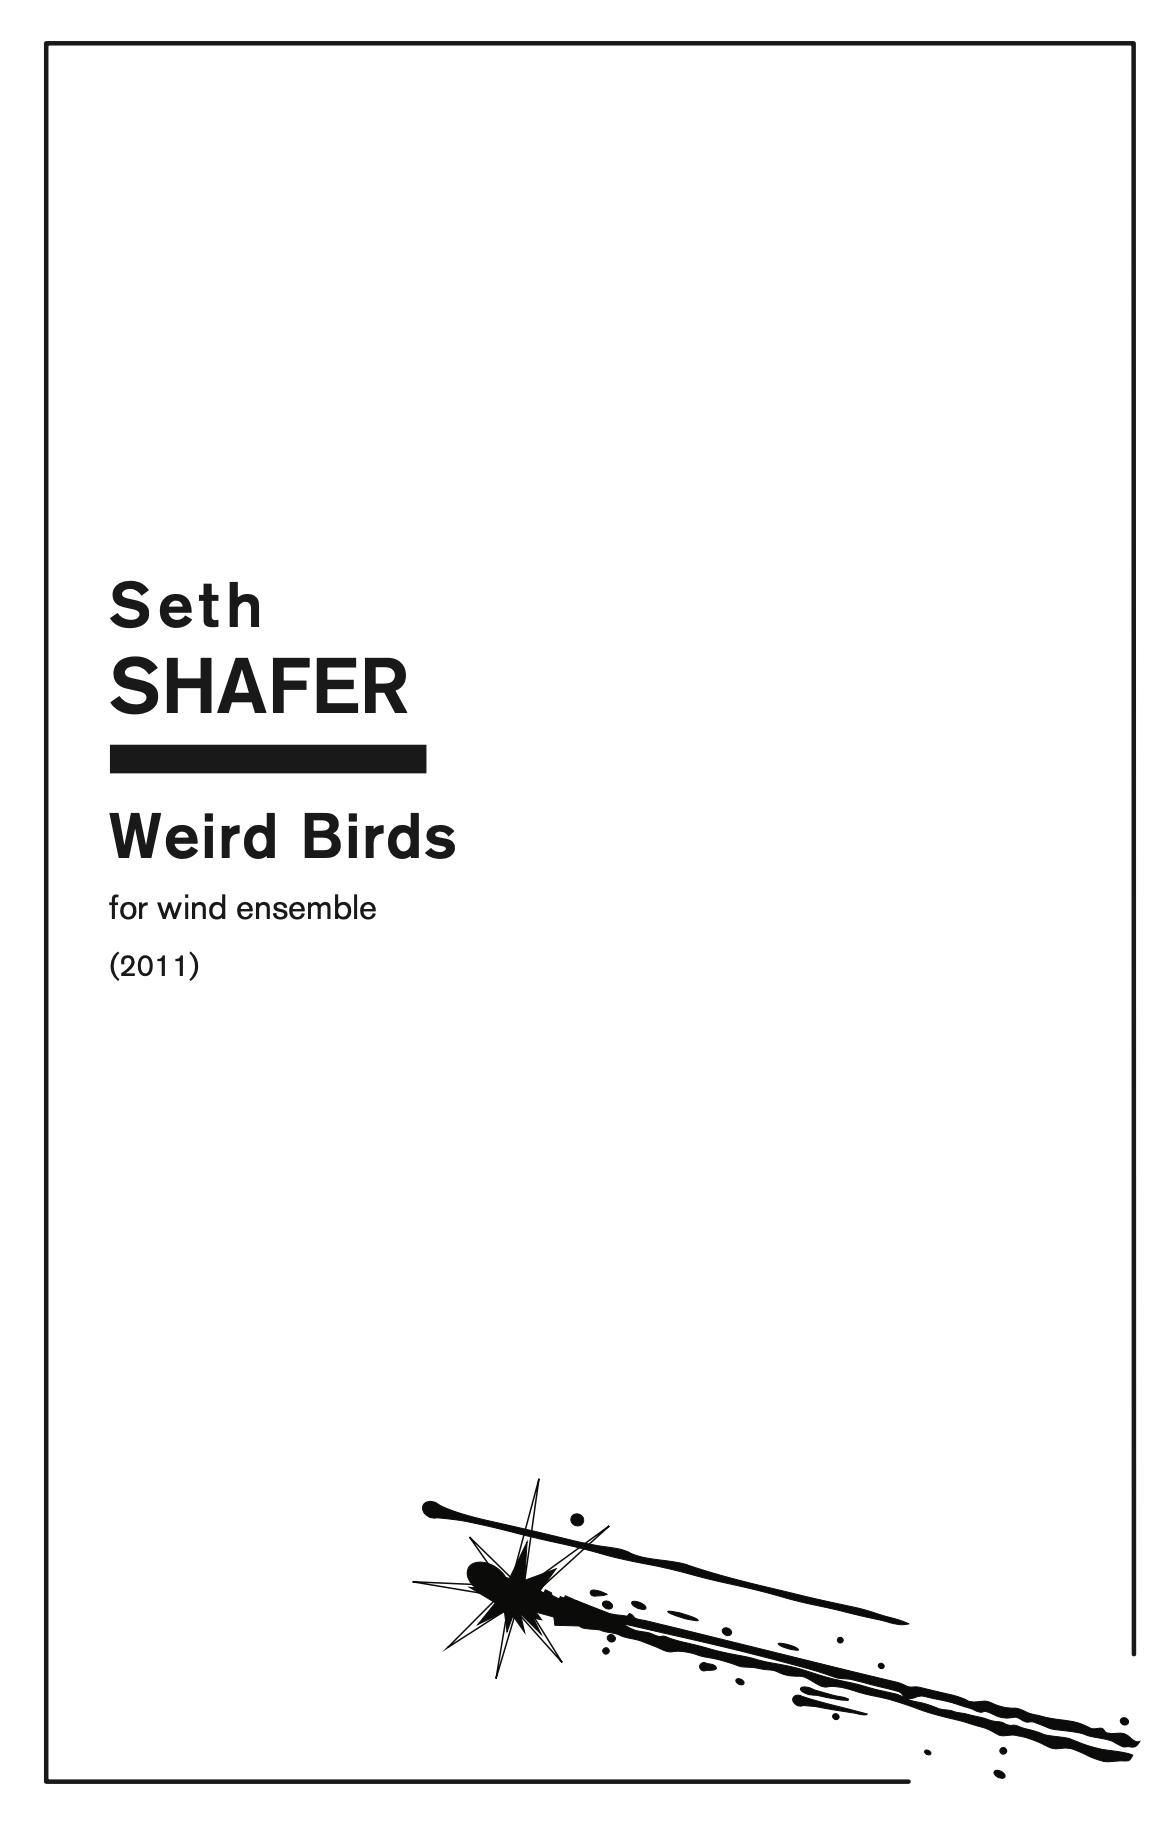 Weird Birds by Seth Shafer